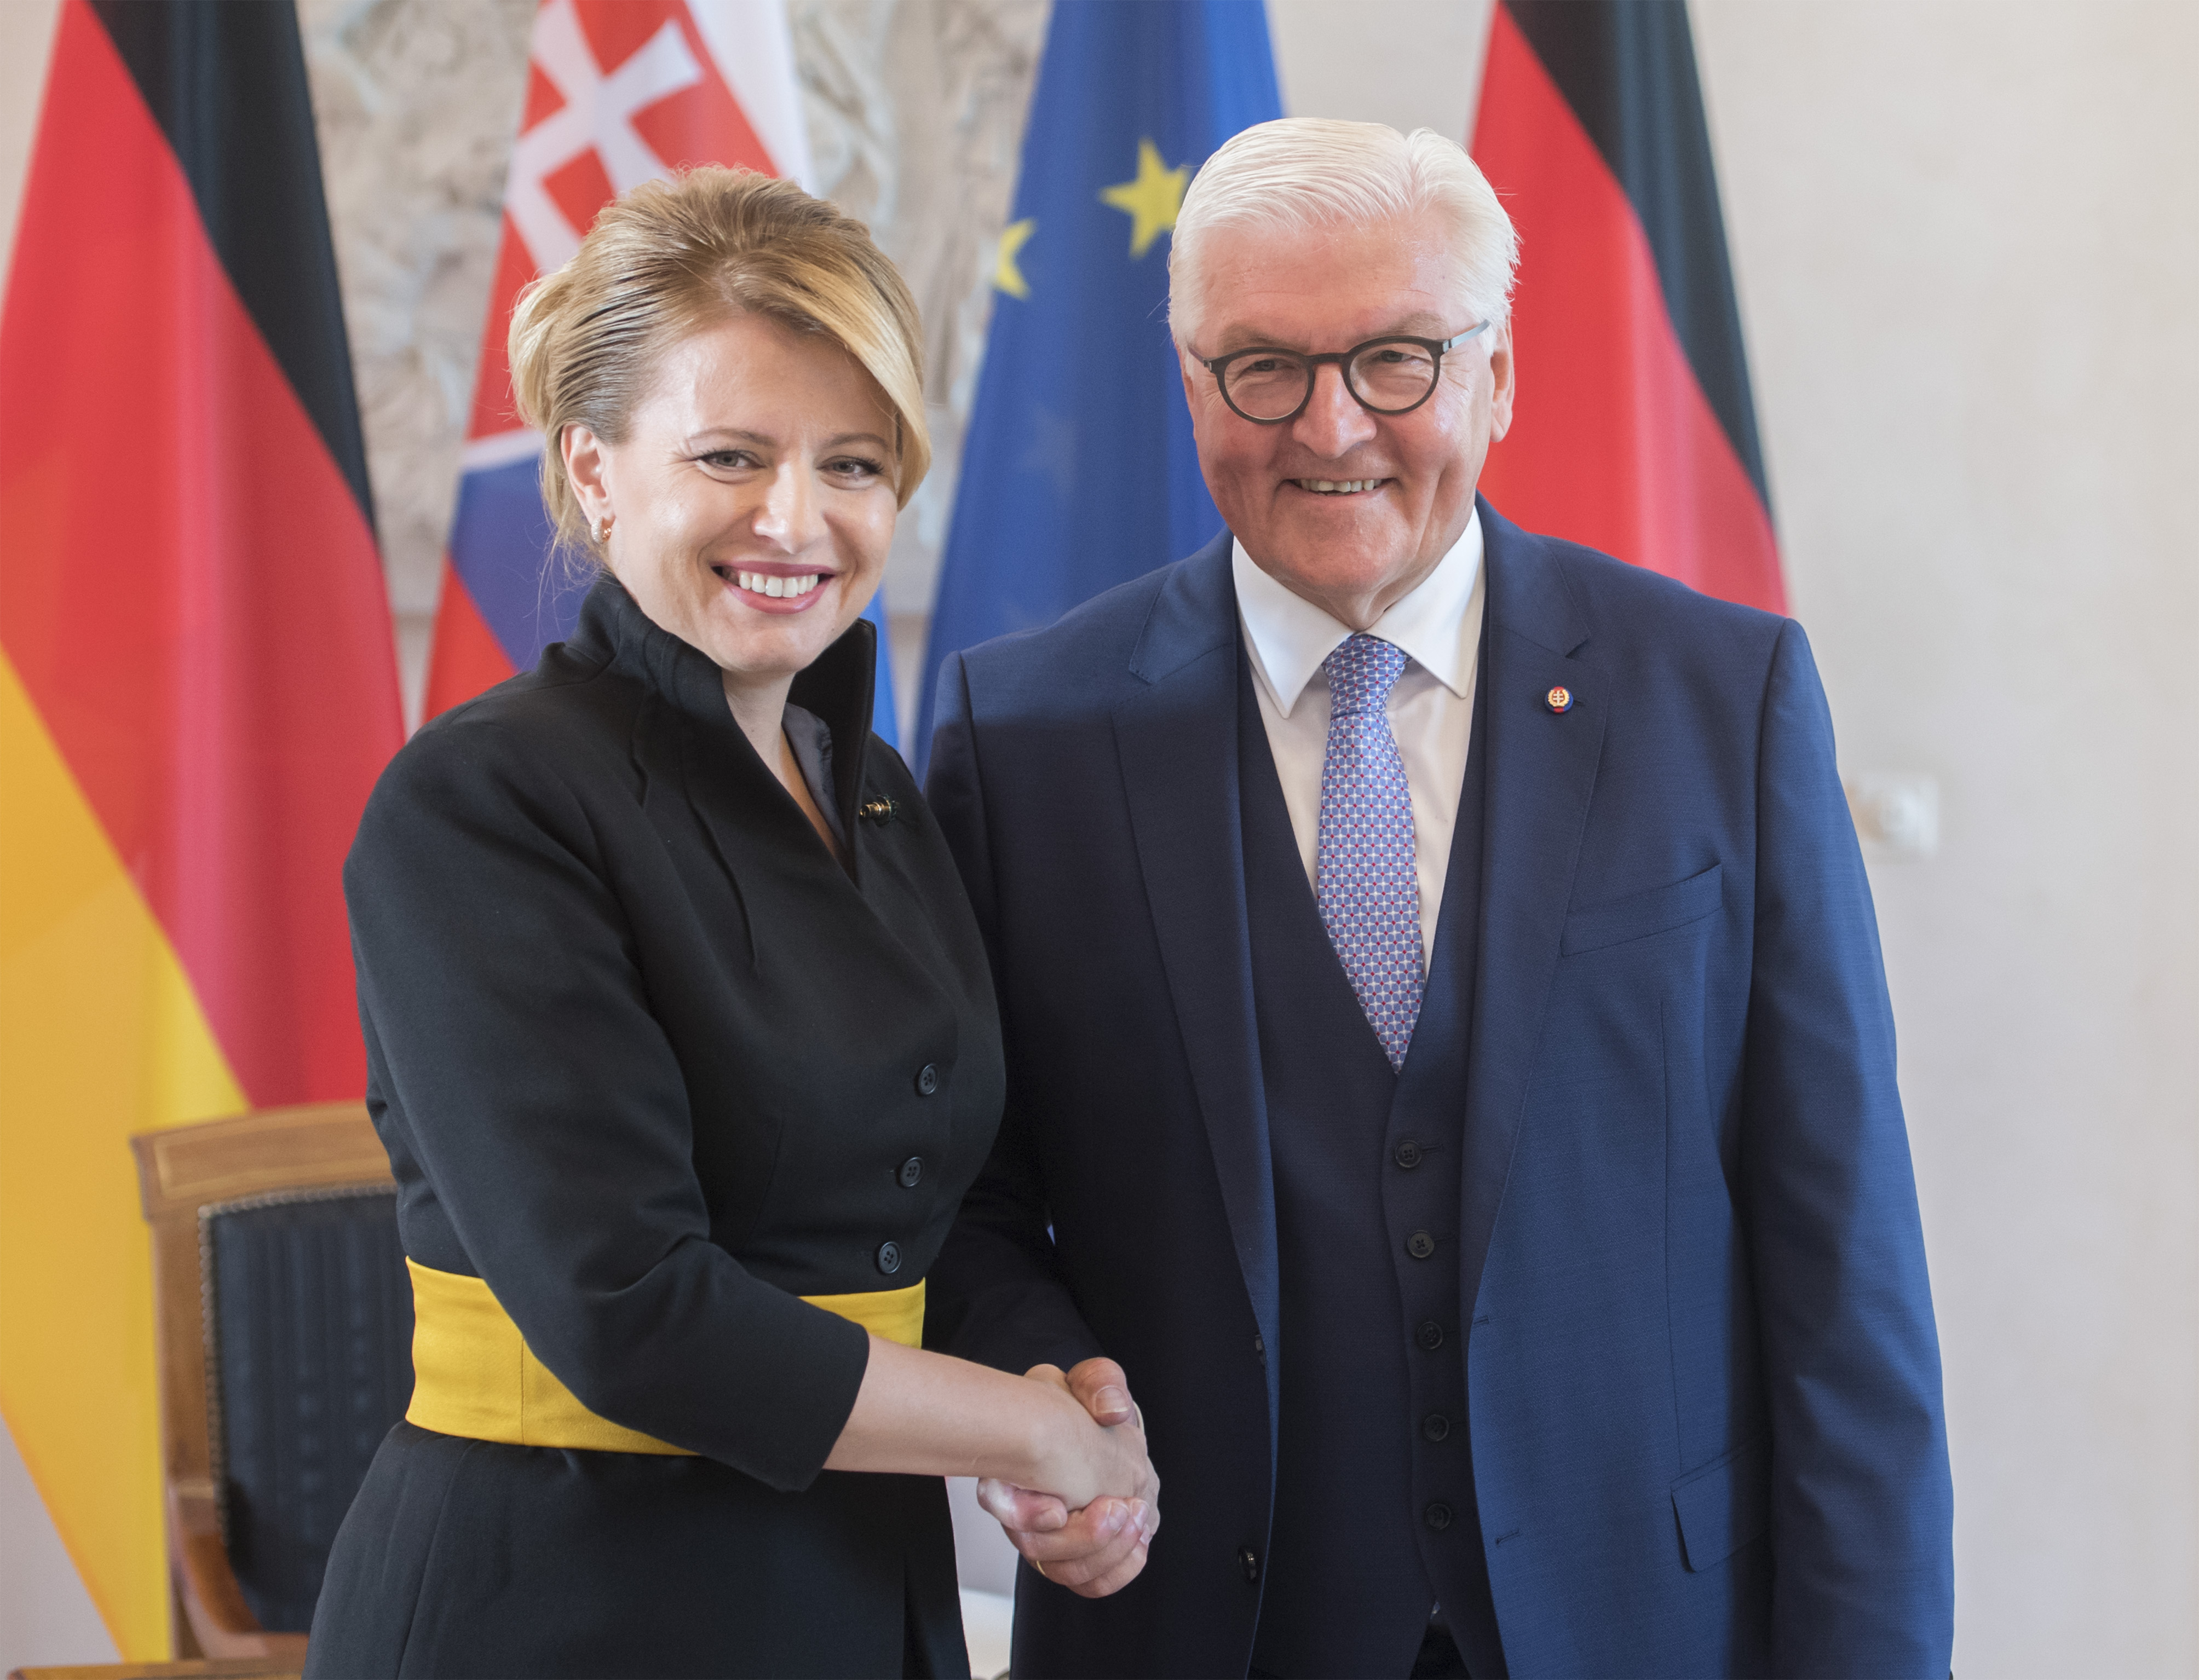 Na snímke slovenská prezidentka Zuzana Čaputová (vľavo) a nemecký prezident Frank-Walter Steinmeier si podávajú ruky počas stretnutia v Berlíne